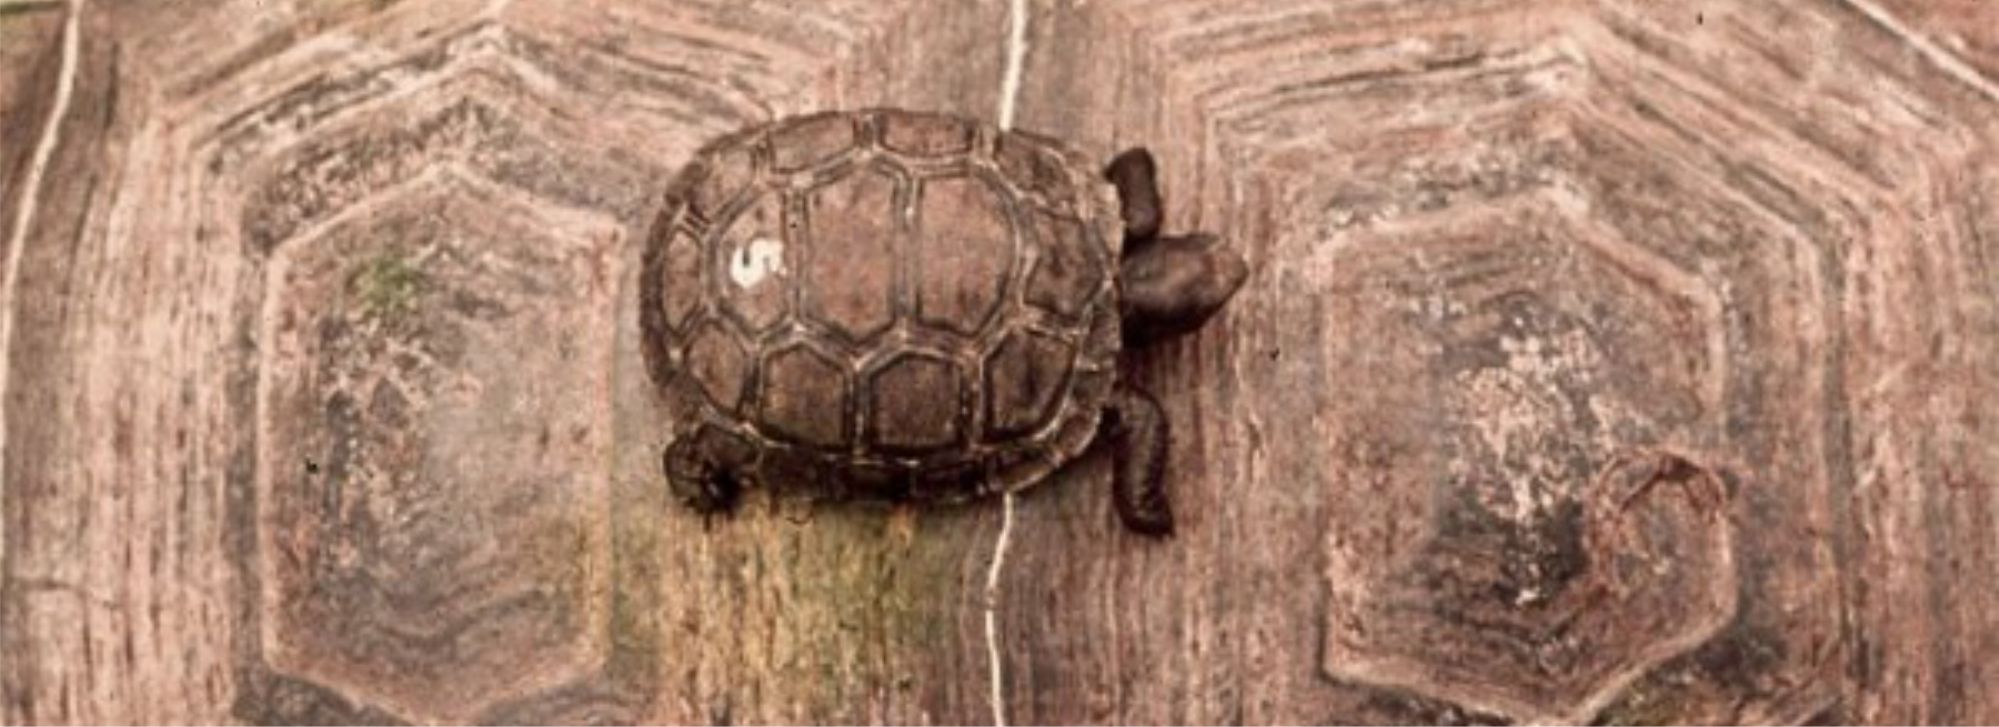 A little tortoise